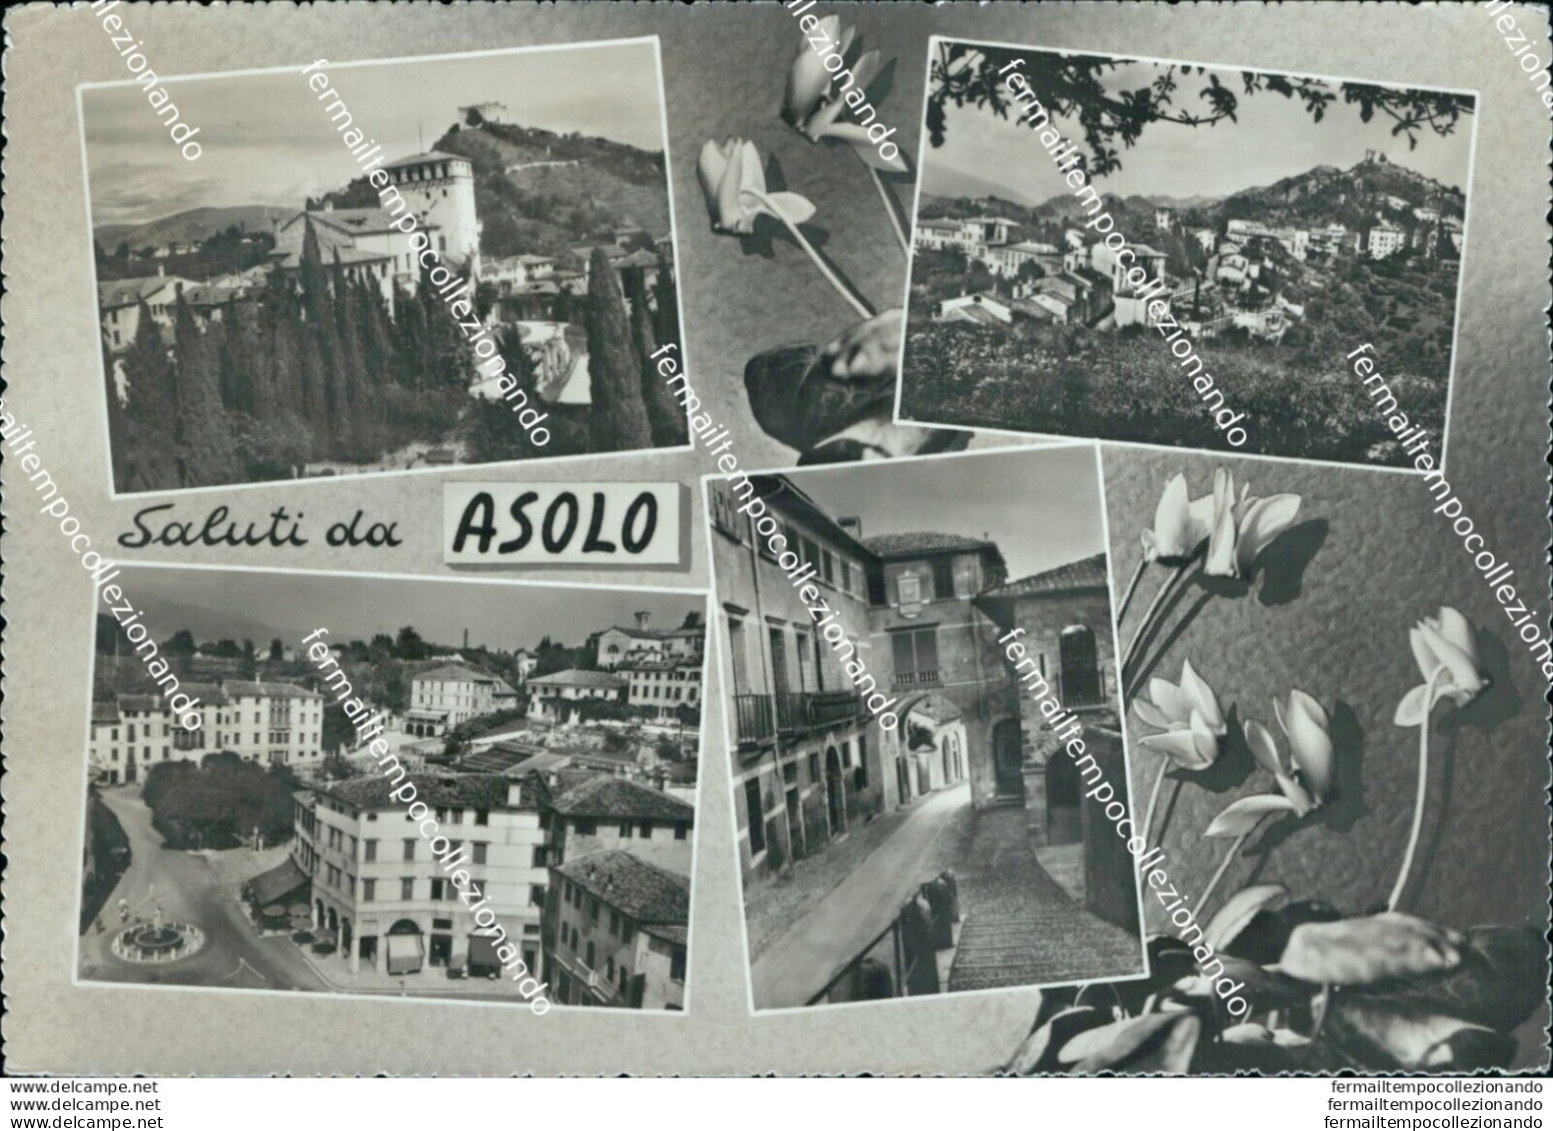 Bl597 Cartolina Saluti Da Asolo Provincia Di Treviso - Treviso